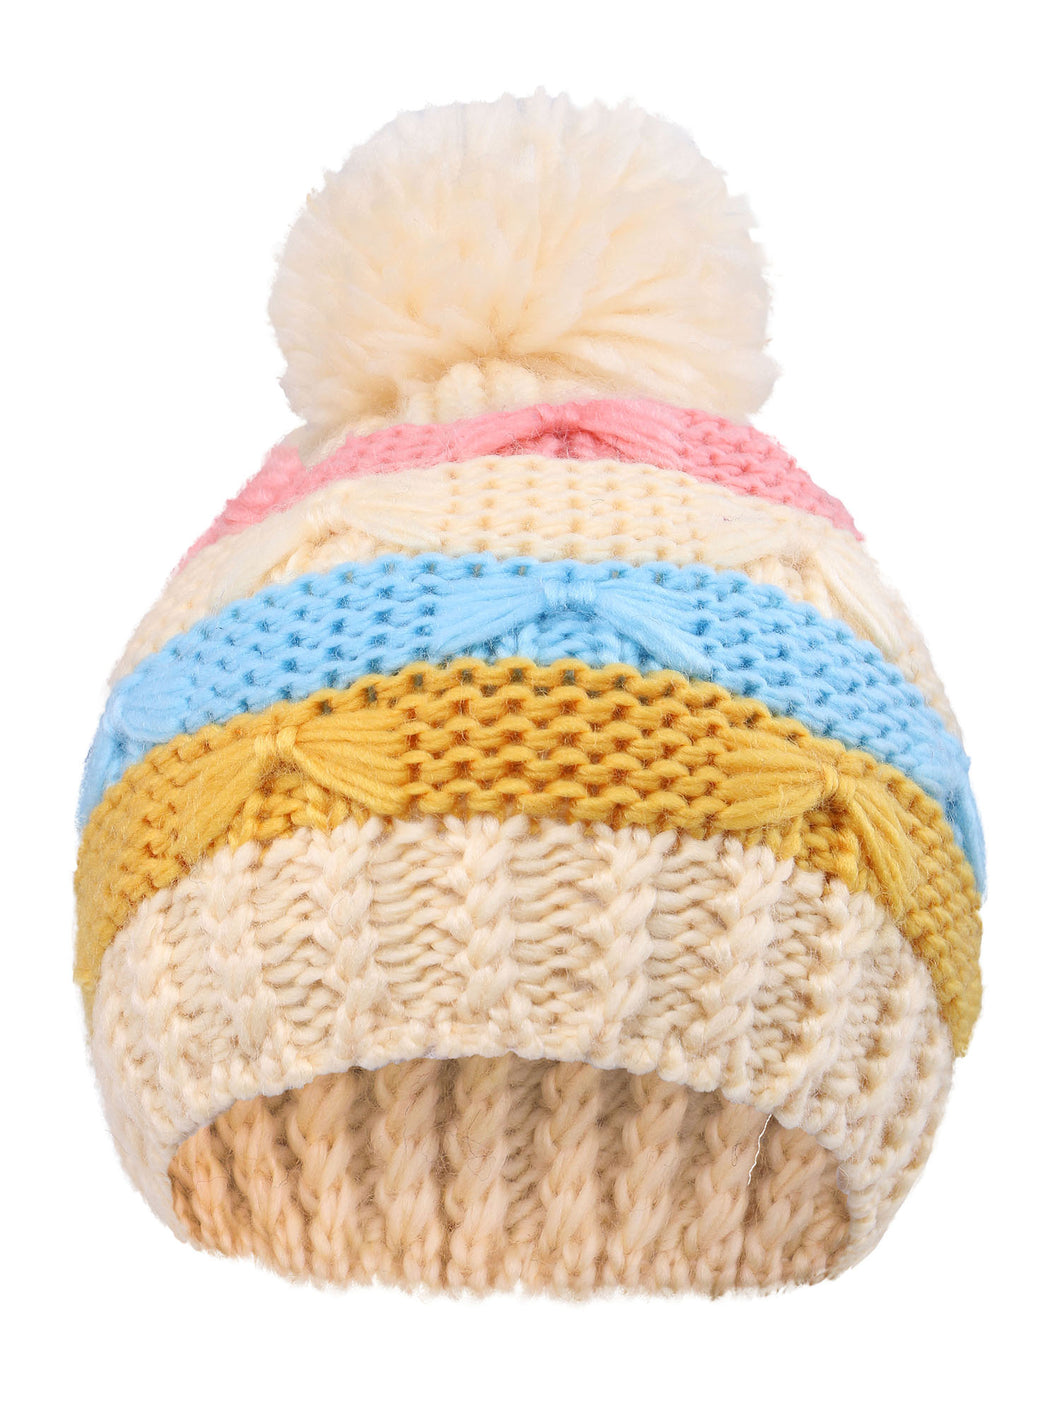 Arctic Paw Kids' Super Chunky Striped Knit Beanie with Yarn Pompom Hat, Cream Striped